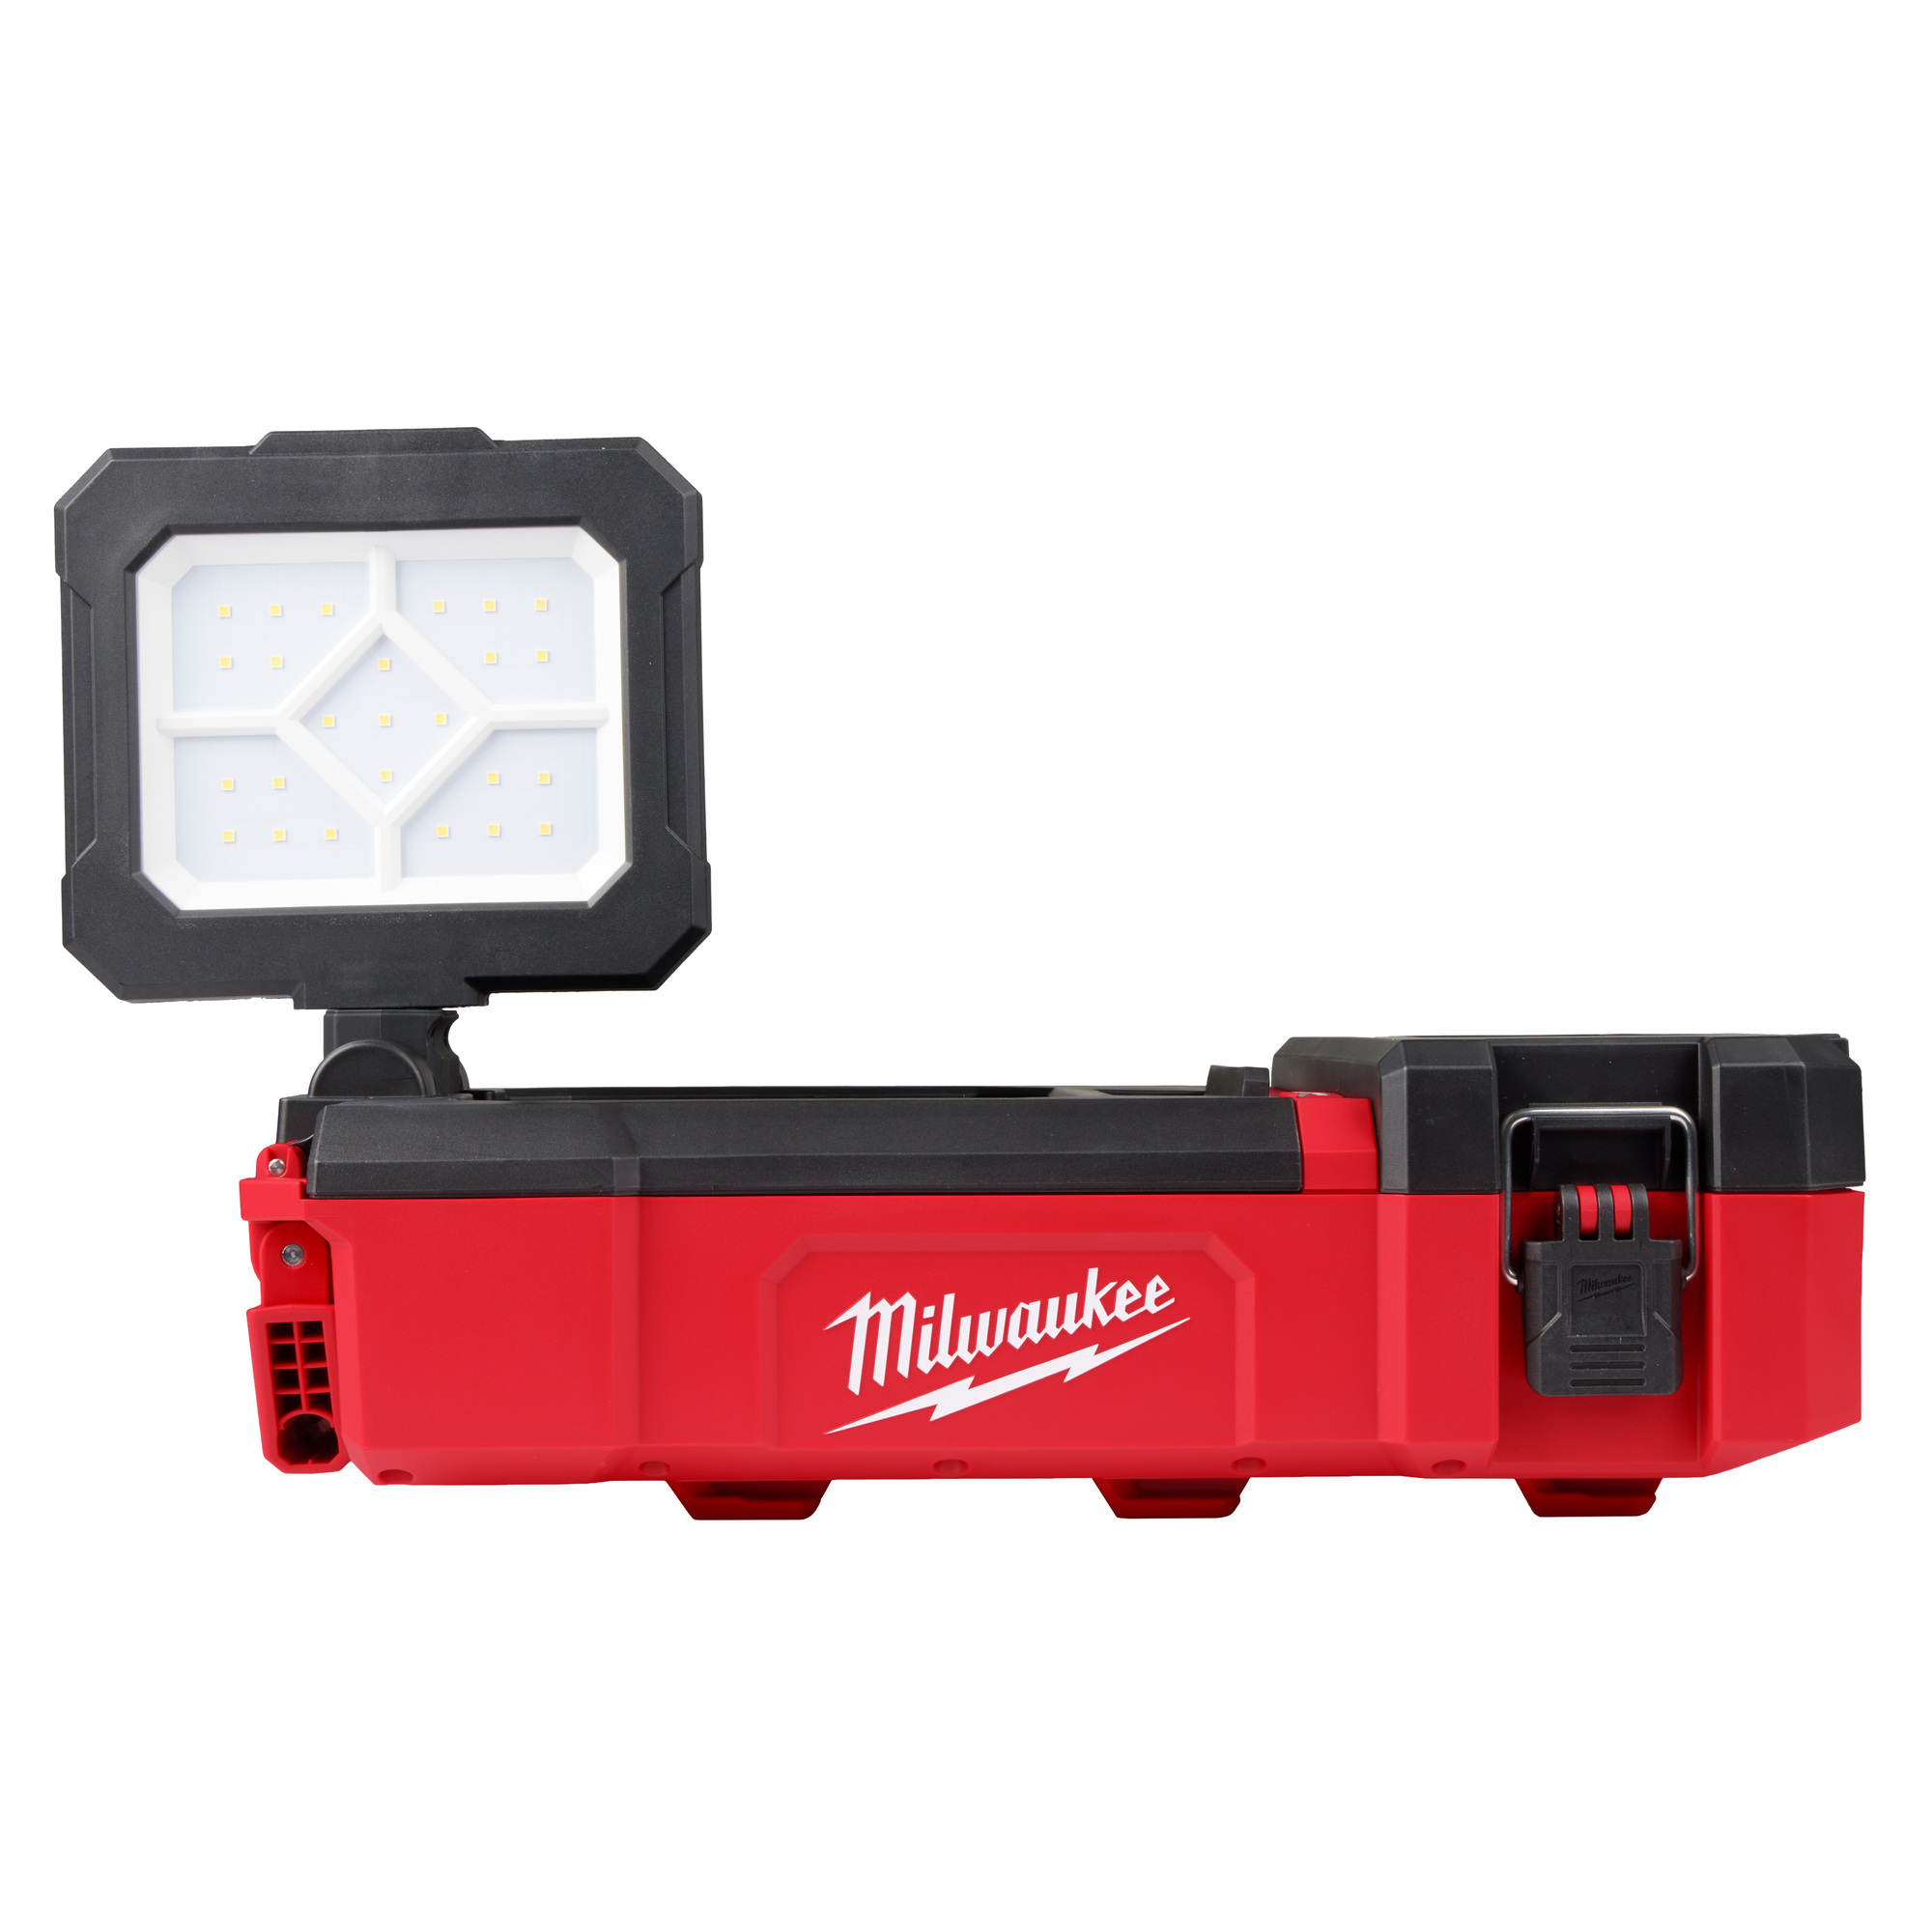 Milwaukee, M12 Flood Light w/ USB Charging, Length 15.2 in, Light Bulb Type LED, Light Output 1400 lumen, Model 2356-20